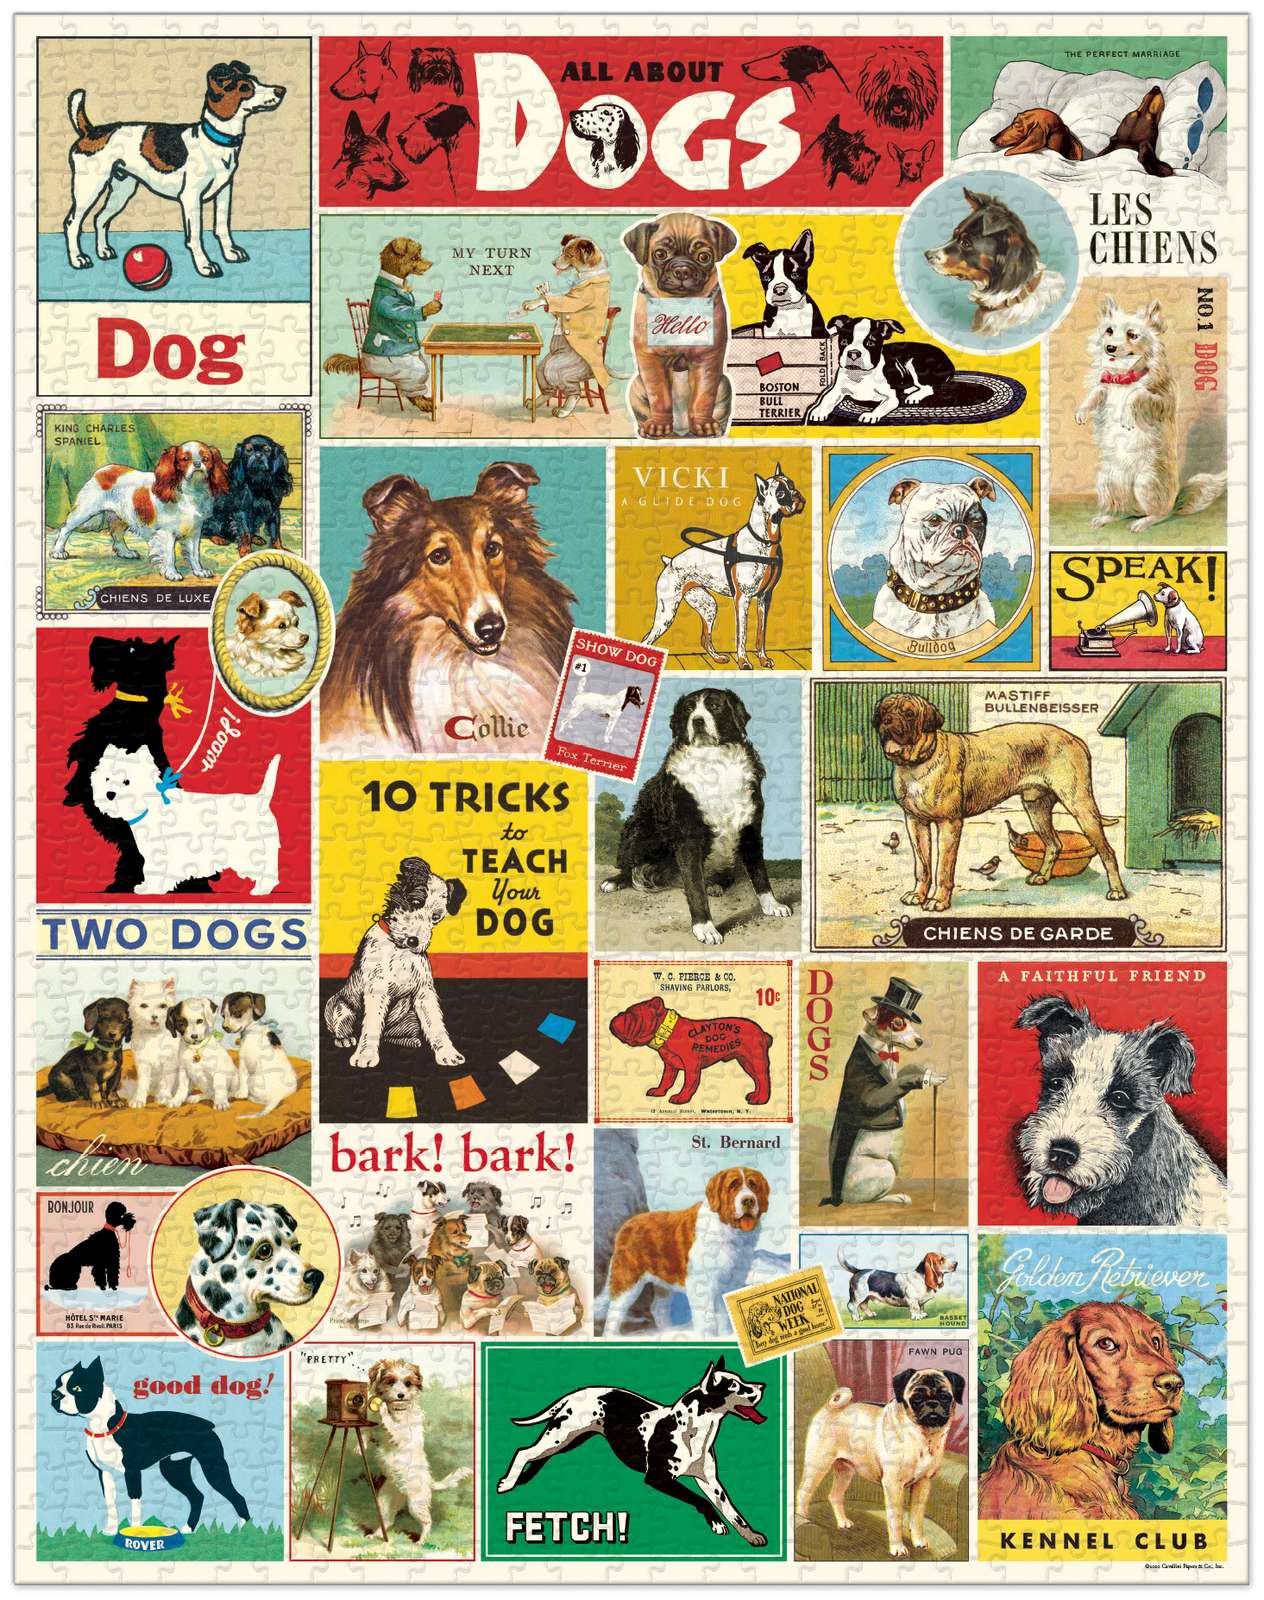 Dogs Vintage Puzzle - 1000 pieces